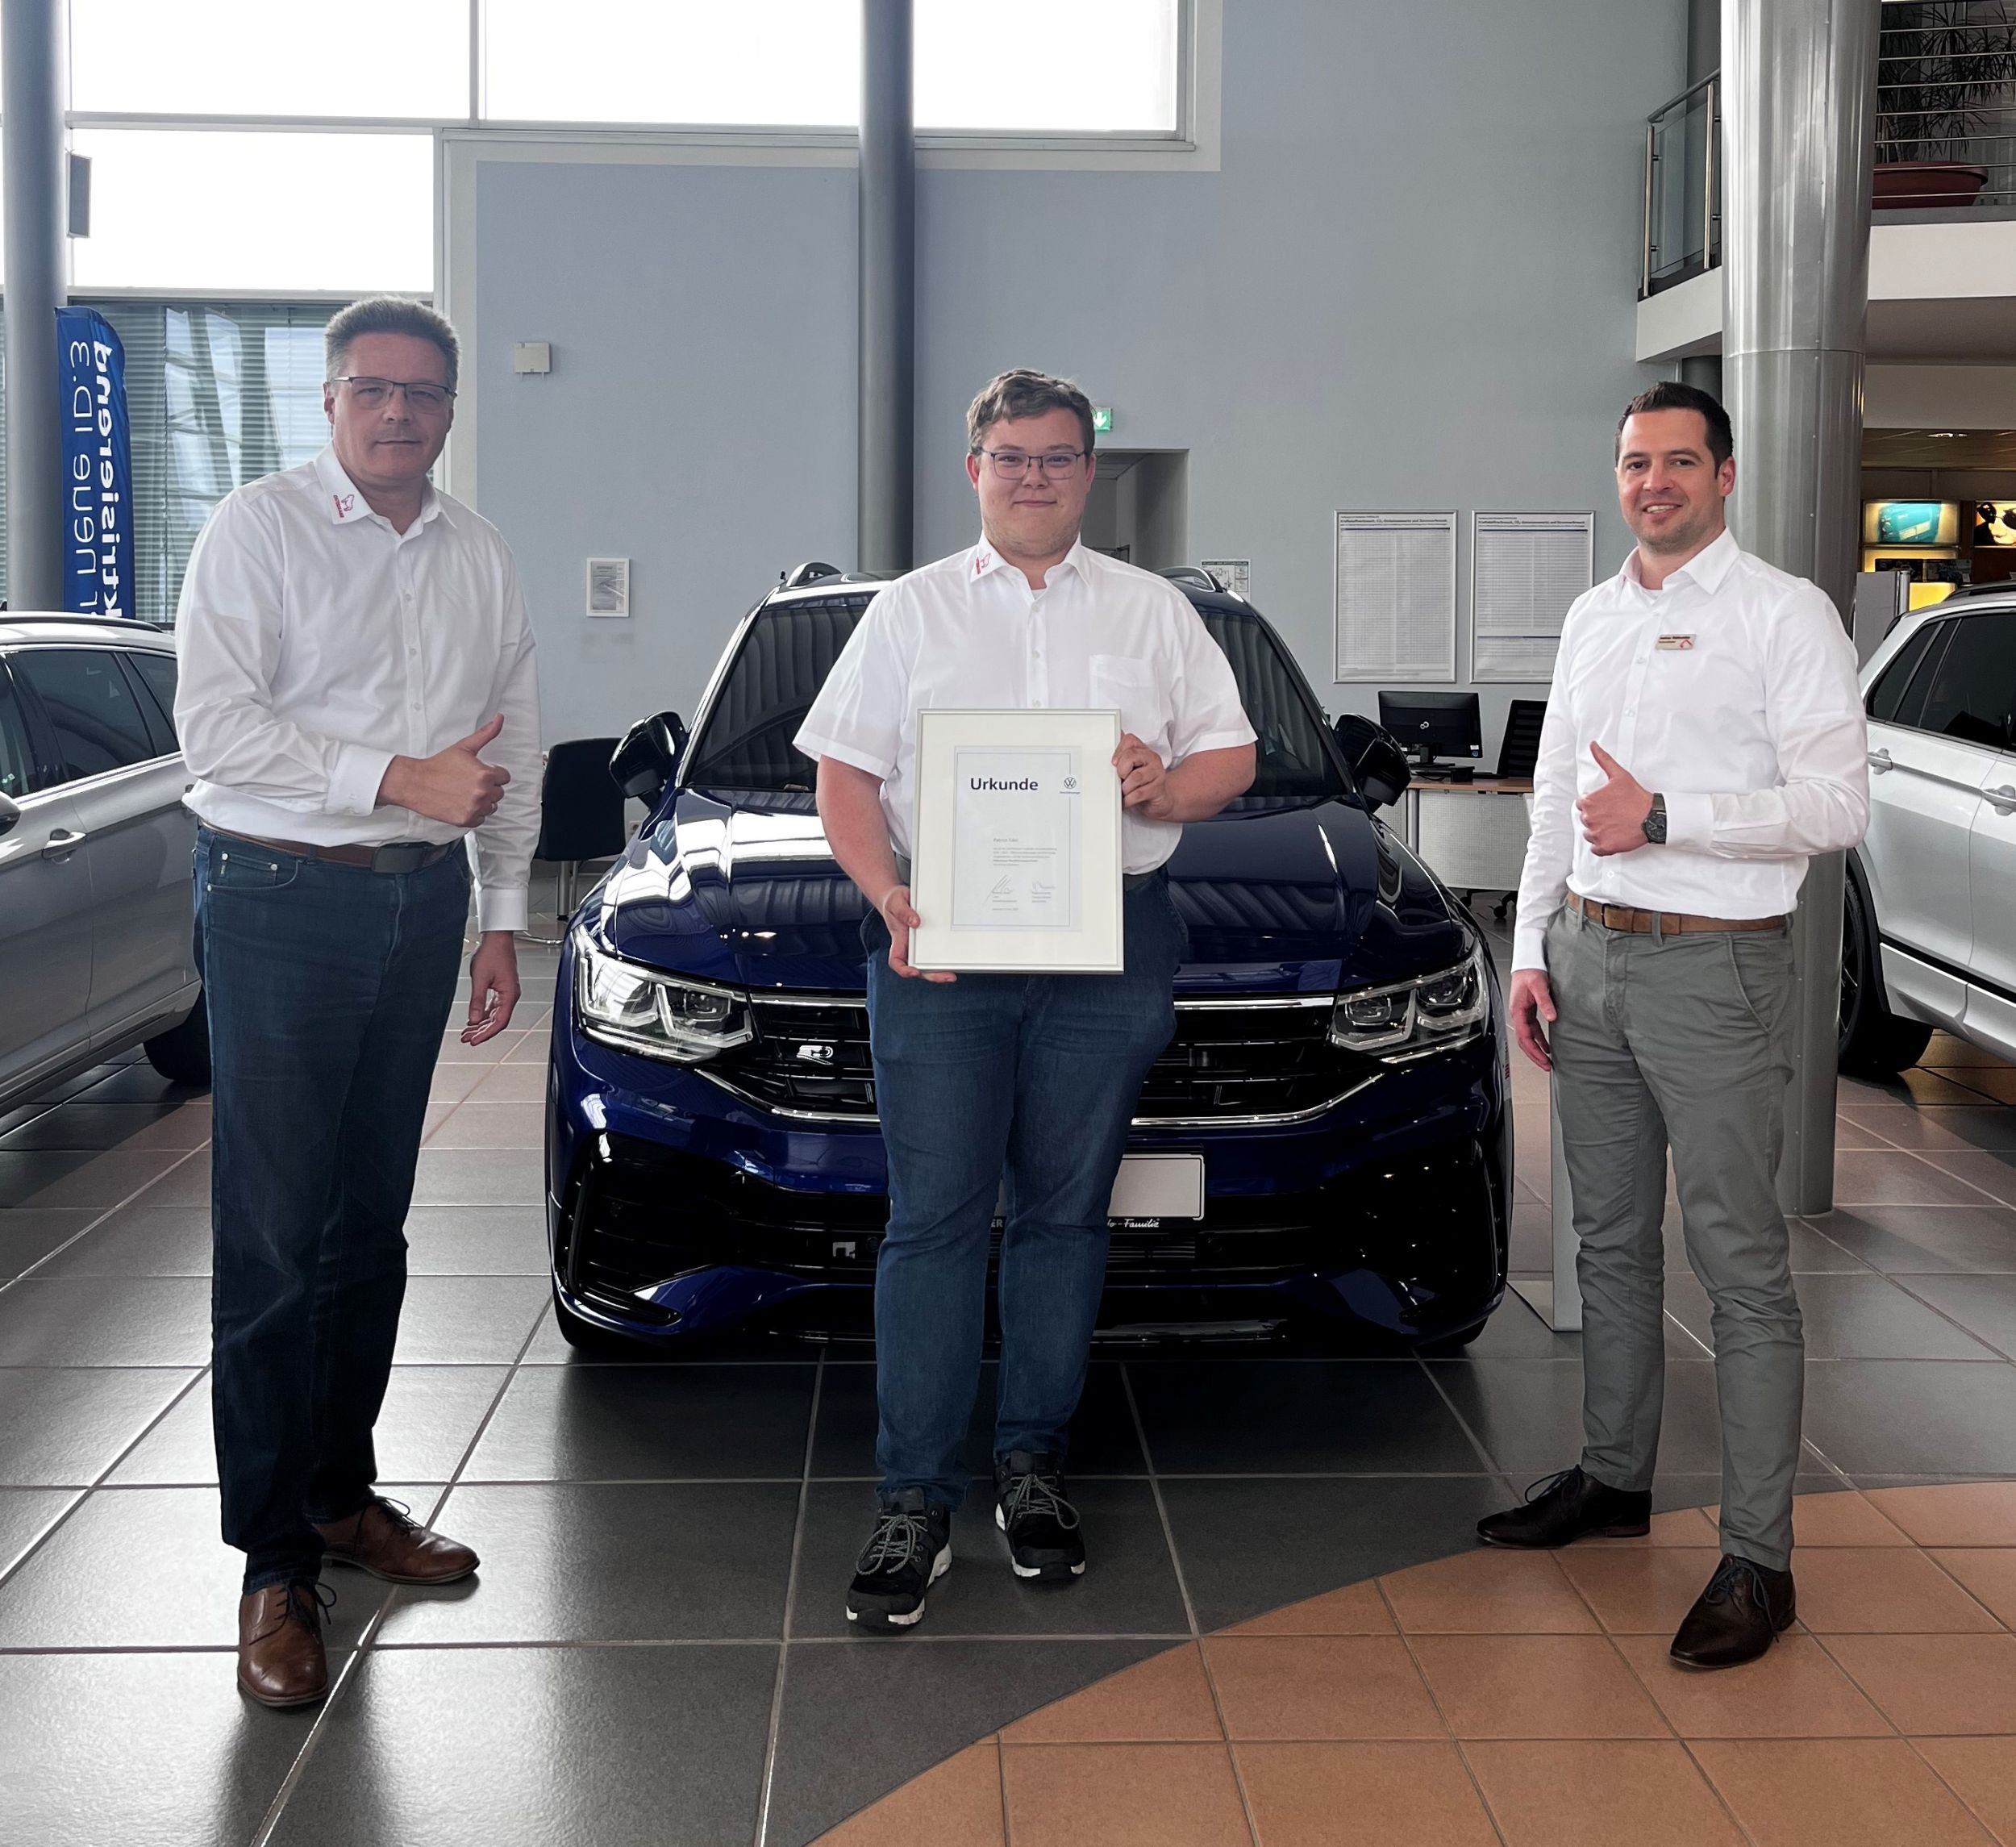 Strahlend am Bild (v. l.): Hans-Jürgen Karrasch (Betriebsleiter), Patrick Edel und Andreas Wolfswinkler (Verkaufsleiter VW)